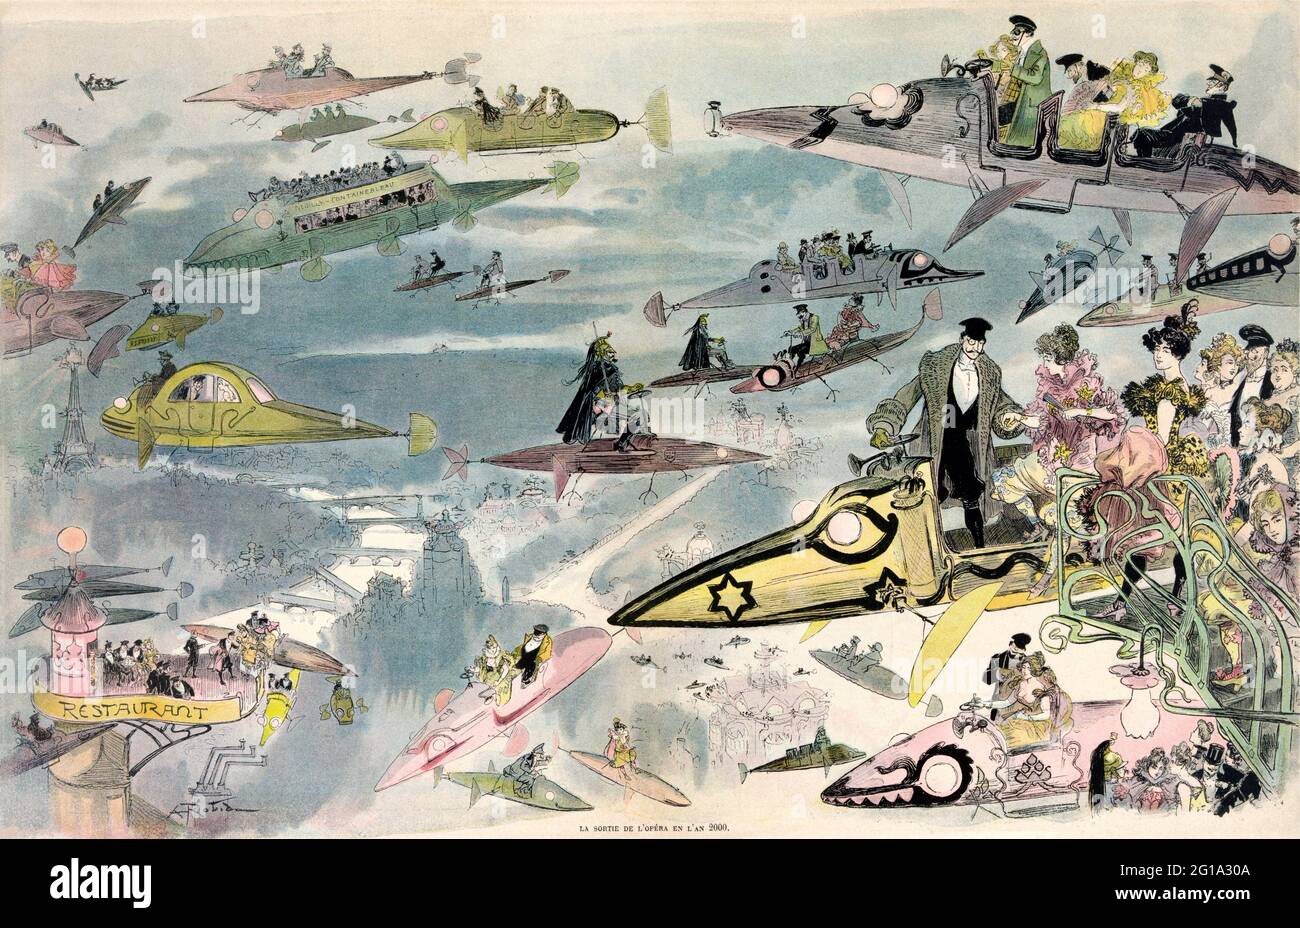 Futuristische Sicht auf Flugreisen über Paris, wenn Menschen die Oper verlassen. Viele Flugzeugtypen sind abgebildet, darunter Busse und Limousinen, Polizisten patrouillieren am Himmel, und Frauen werden gesehen, wie sie ihre eigenen Flugzeuge fahren, wie sie 1900 vorgestellt wurden. Von Albert Robida ca 1902 Stockfoto